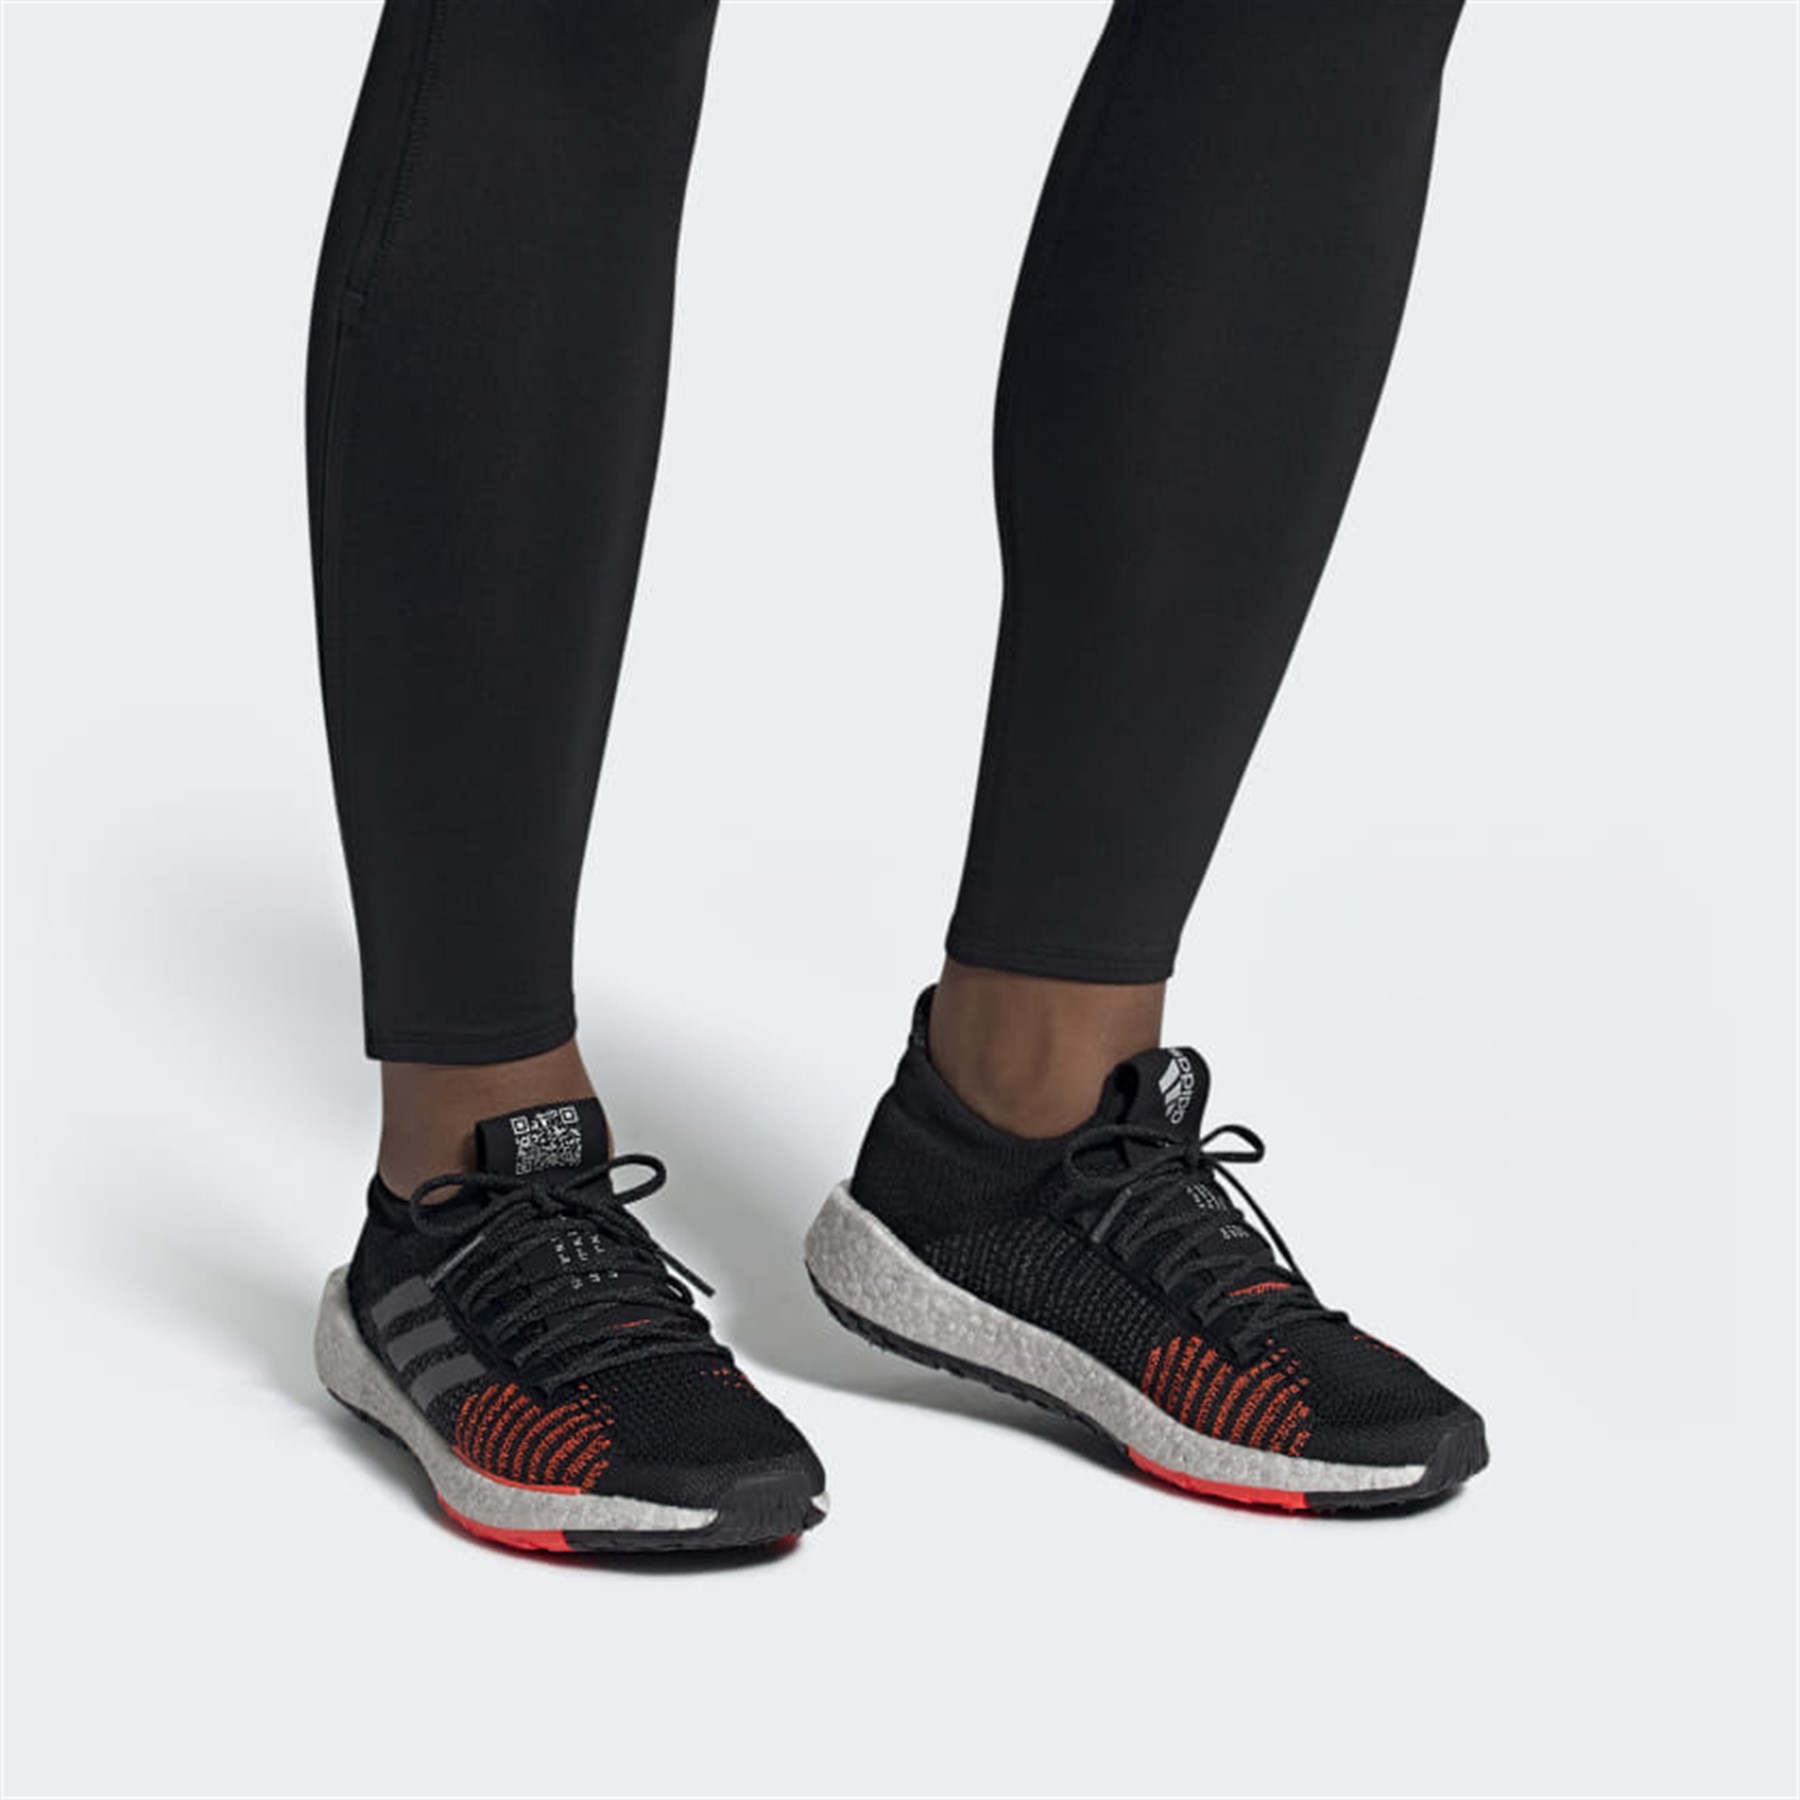 Adidas Erkek Koşu - Yürüyüş Spor Ayakkabı F33909 Pulseboost Hd M